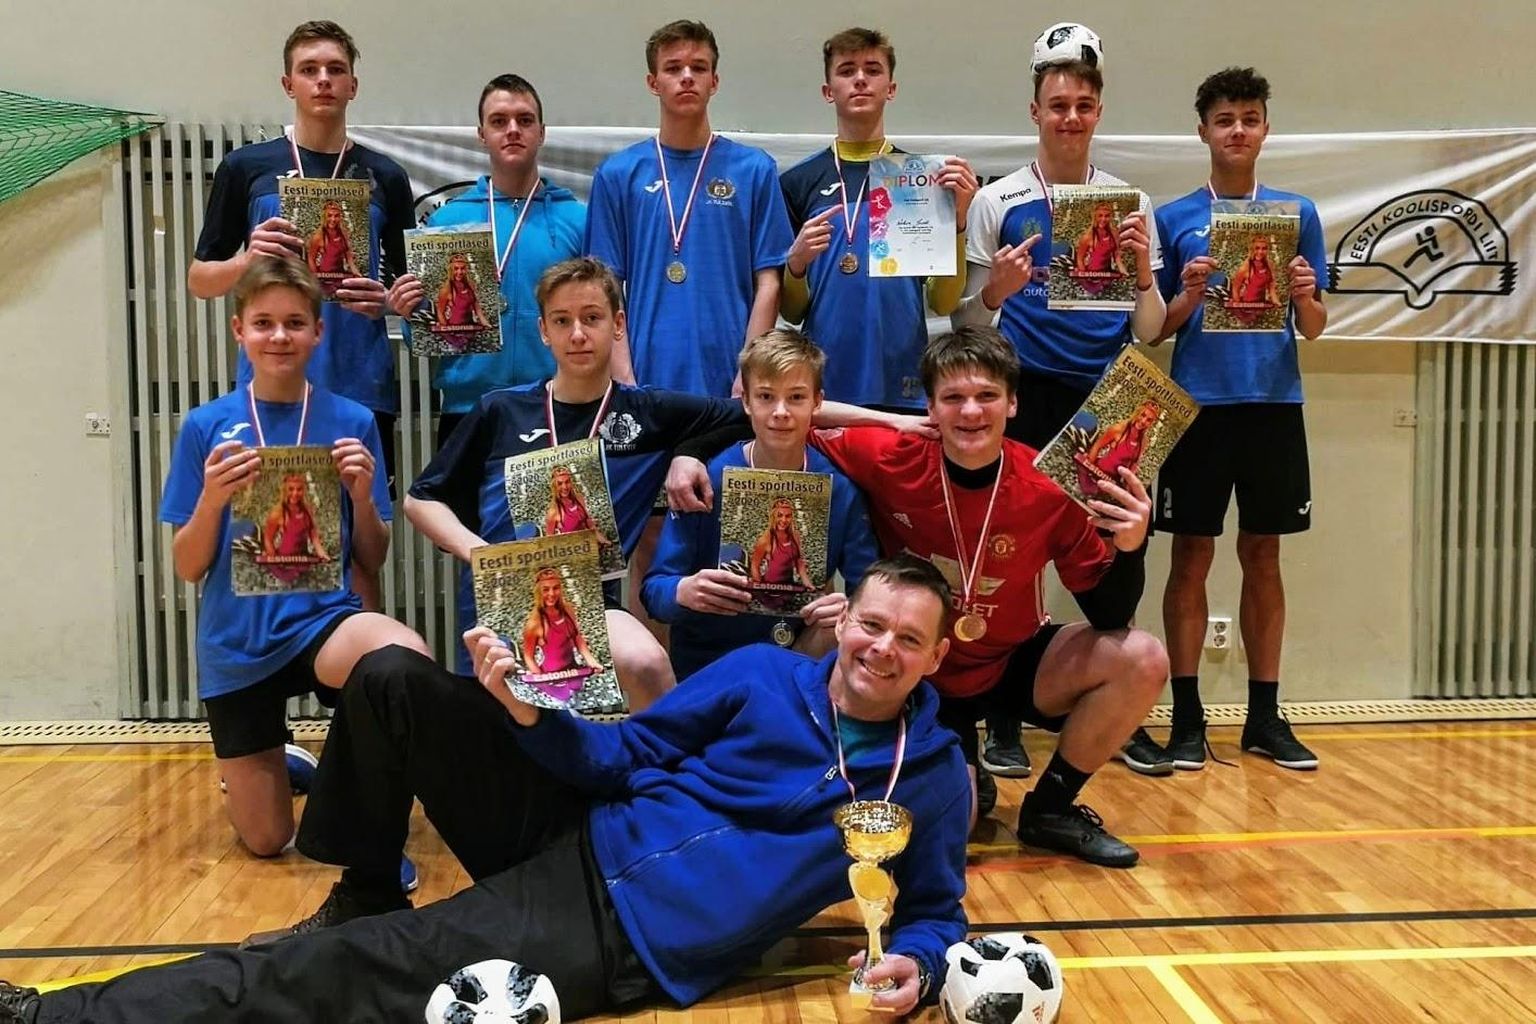 Jakobsoni kooli võistkond võitis Eesti koolispordi liidu saalijalgpalli meistriliiga finaalturniiri.